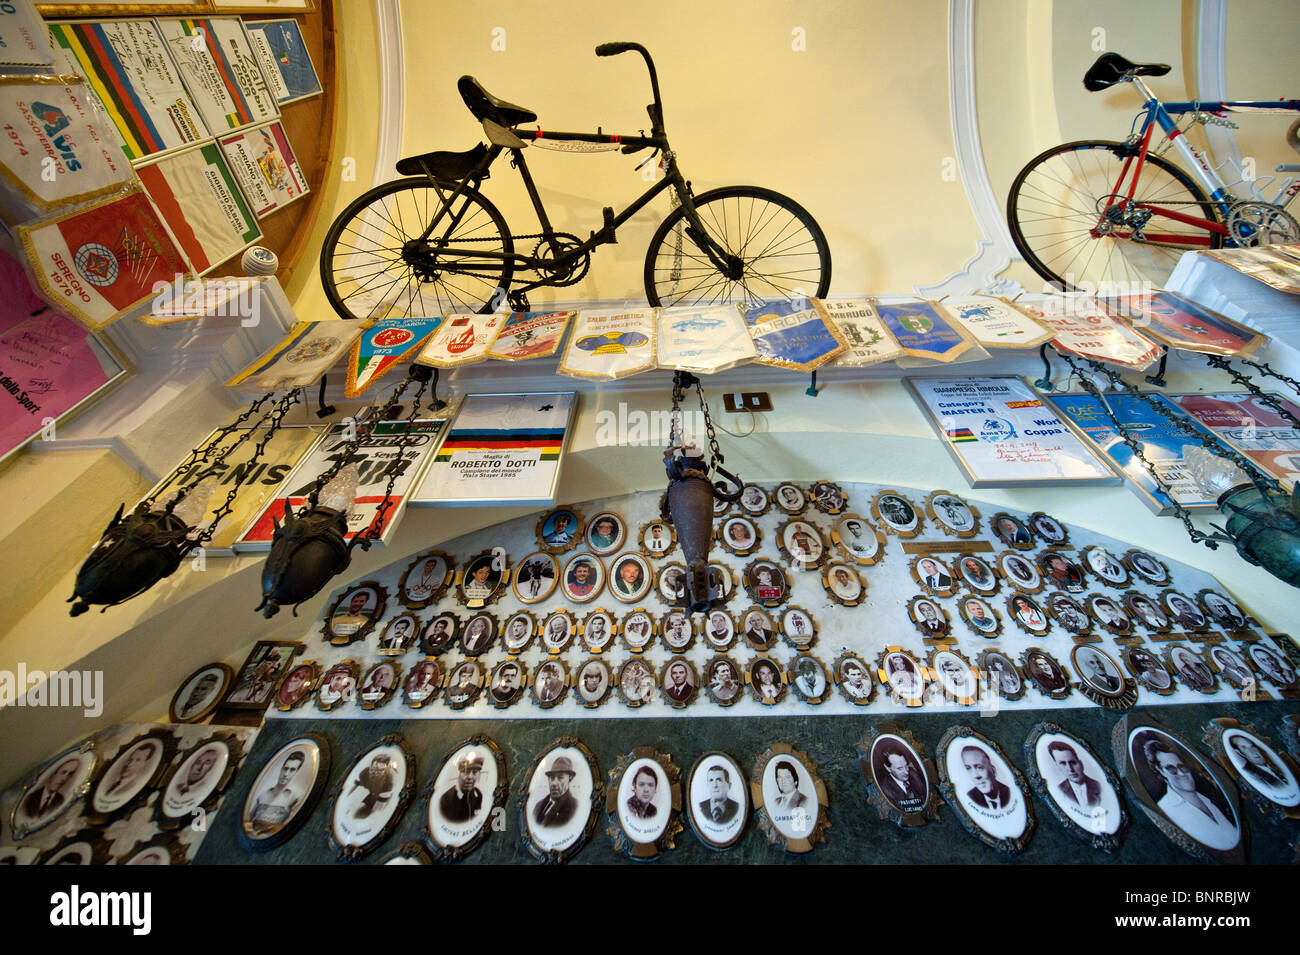 Musée du cyclisme Banque de photographies et d'images à haute résolution -  Alamy